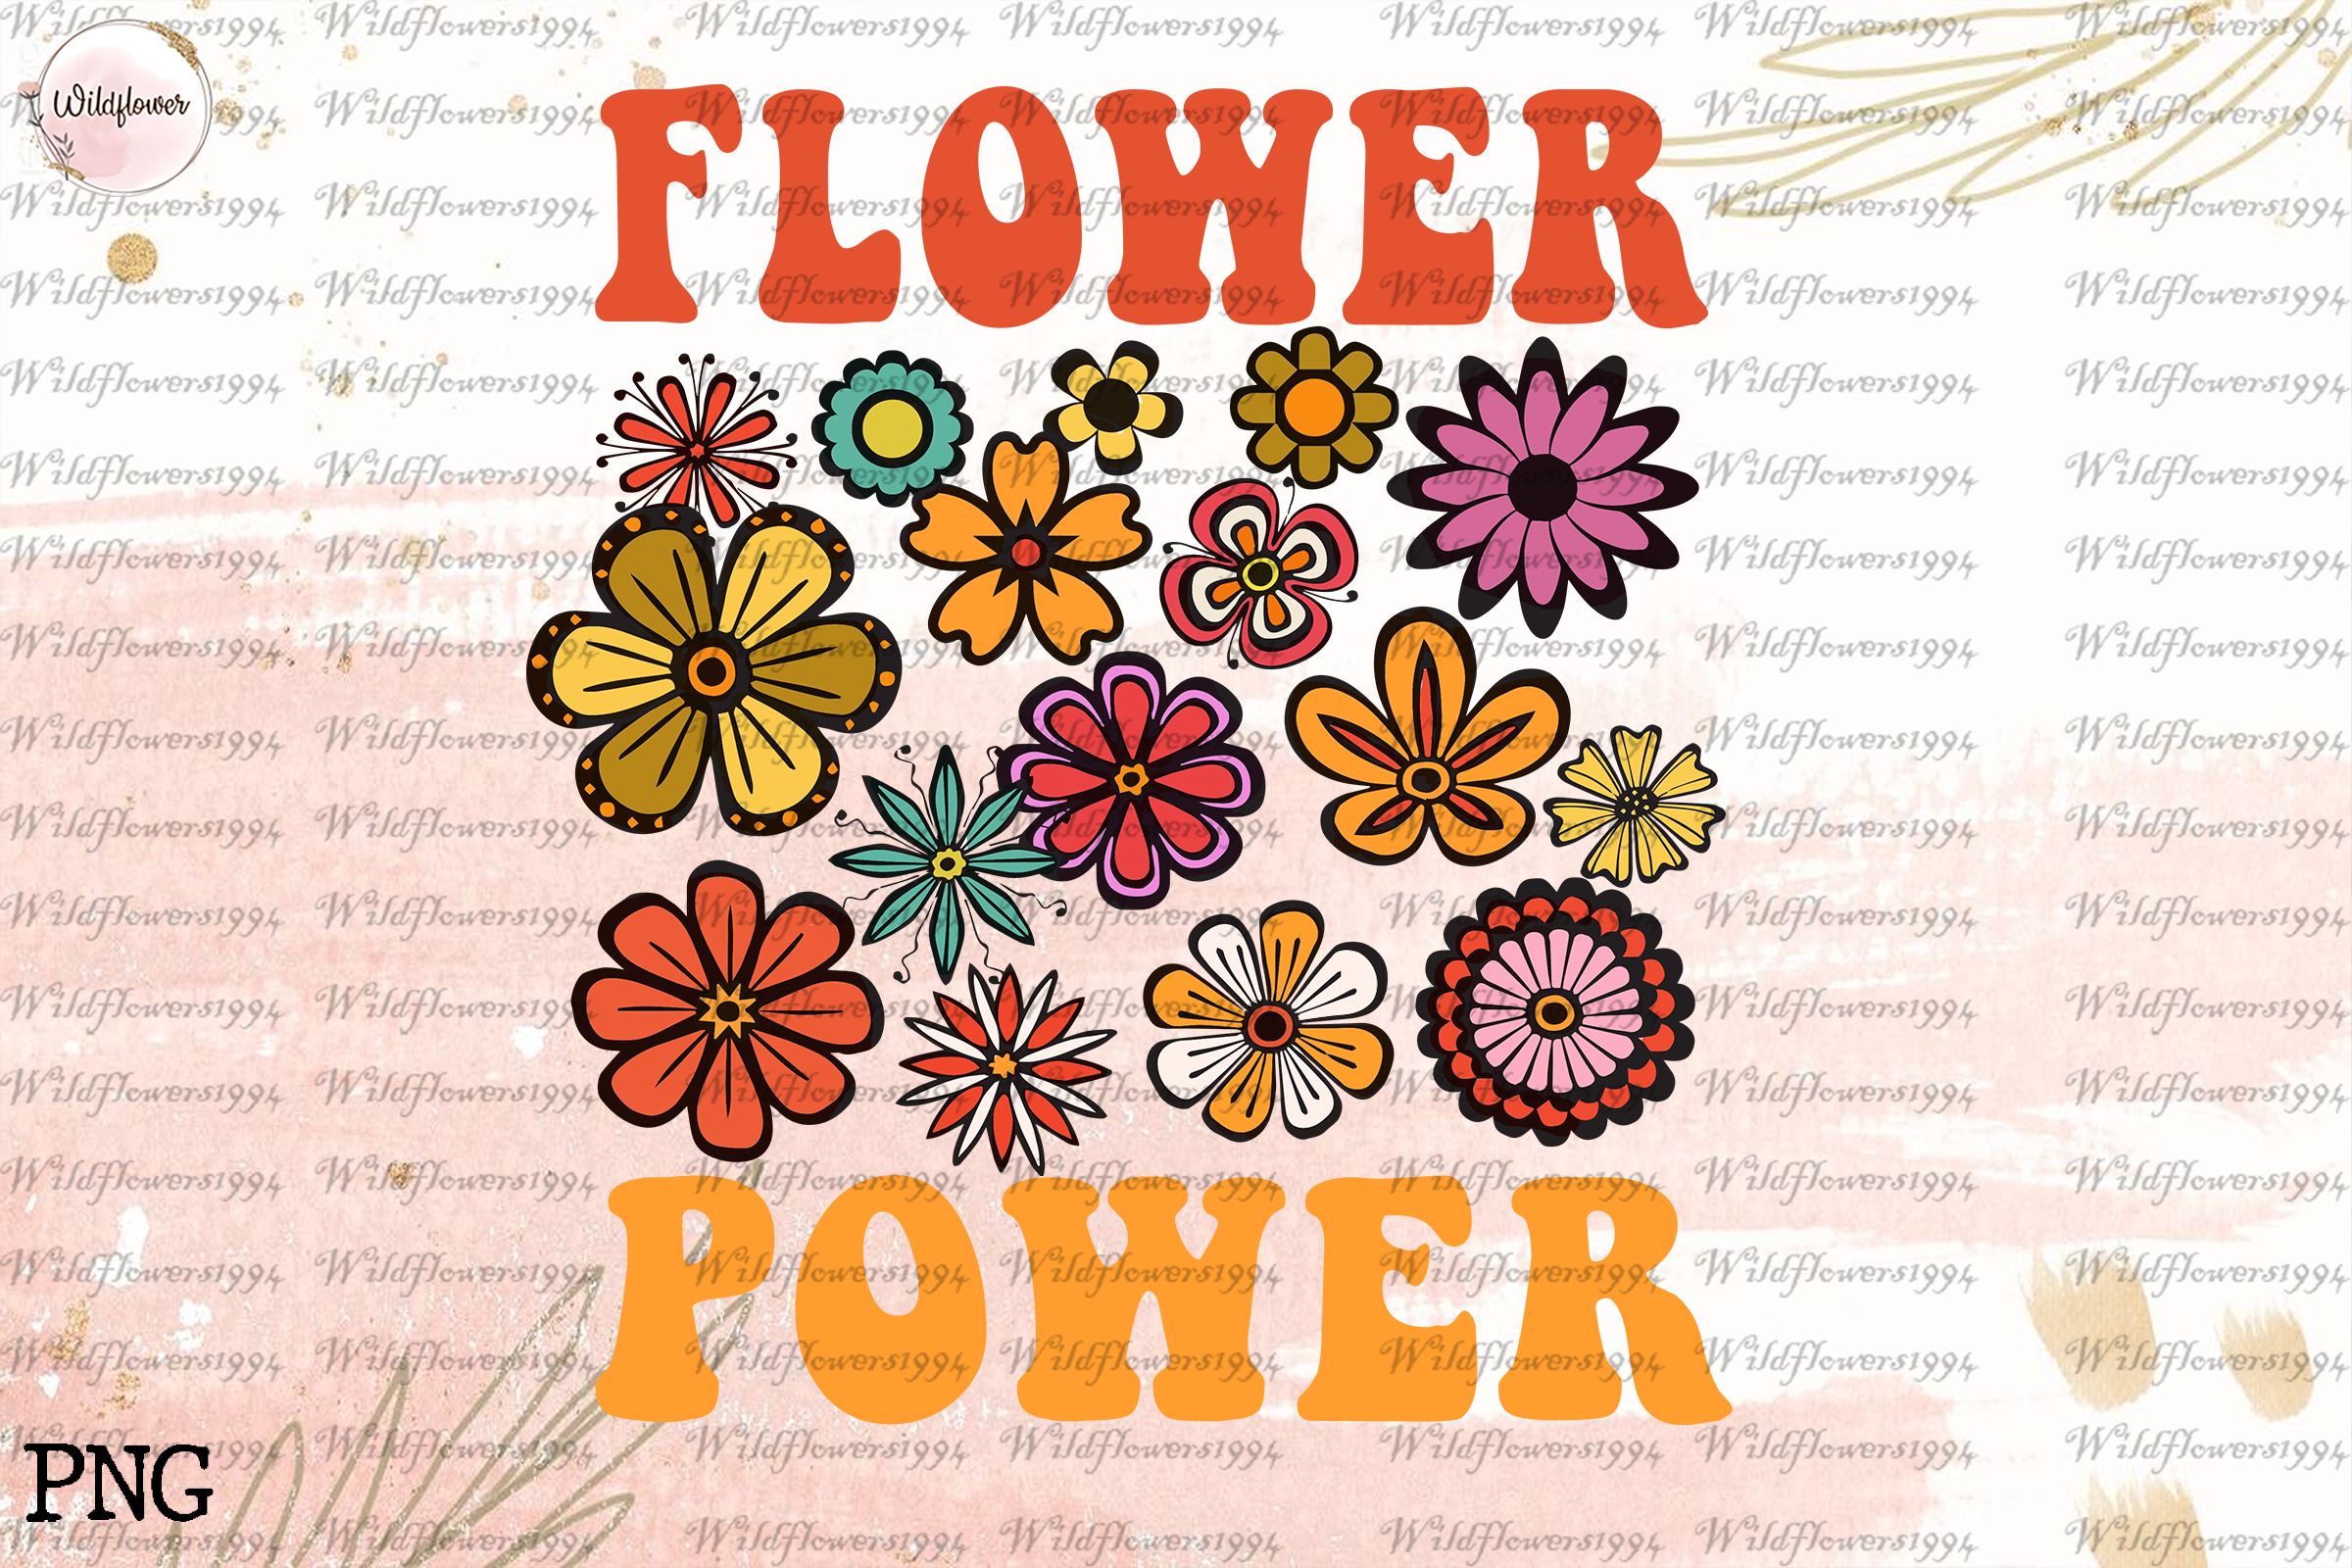 70s flower power